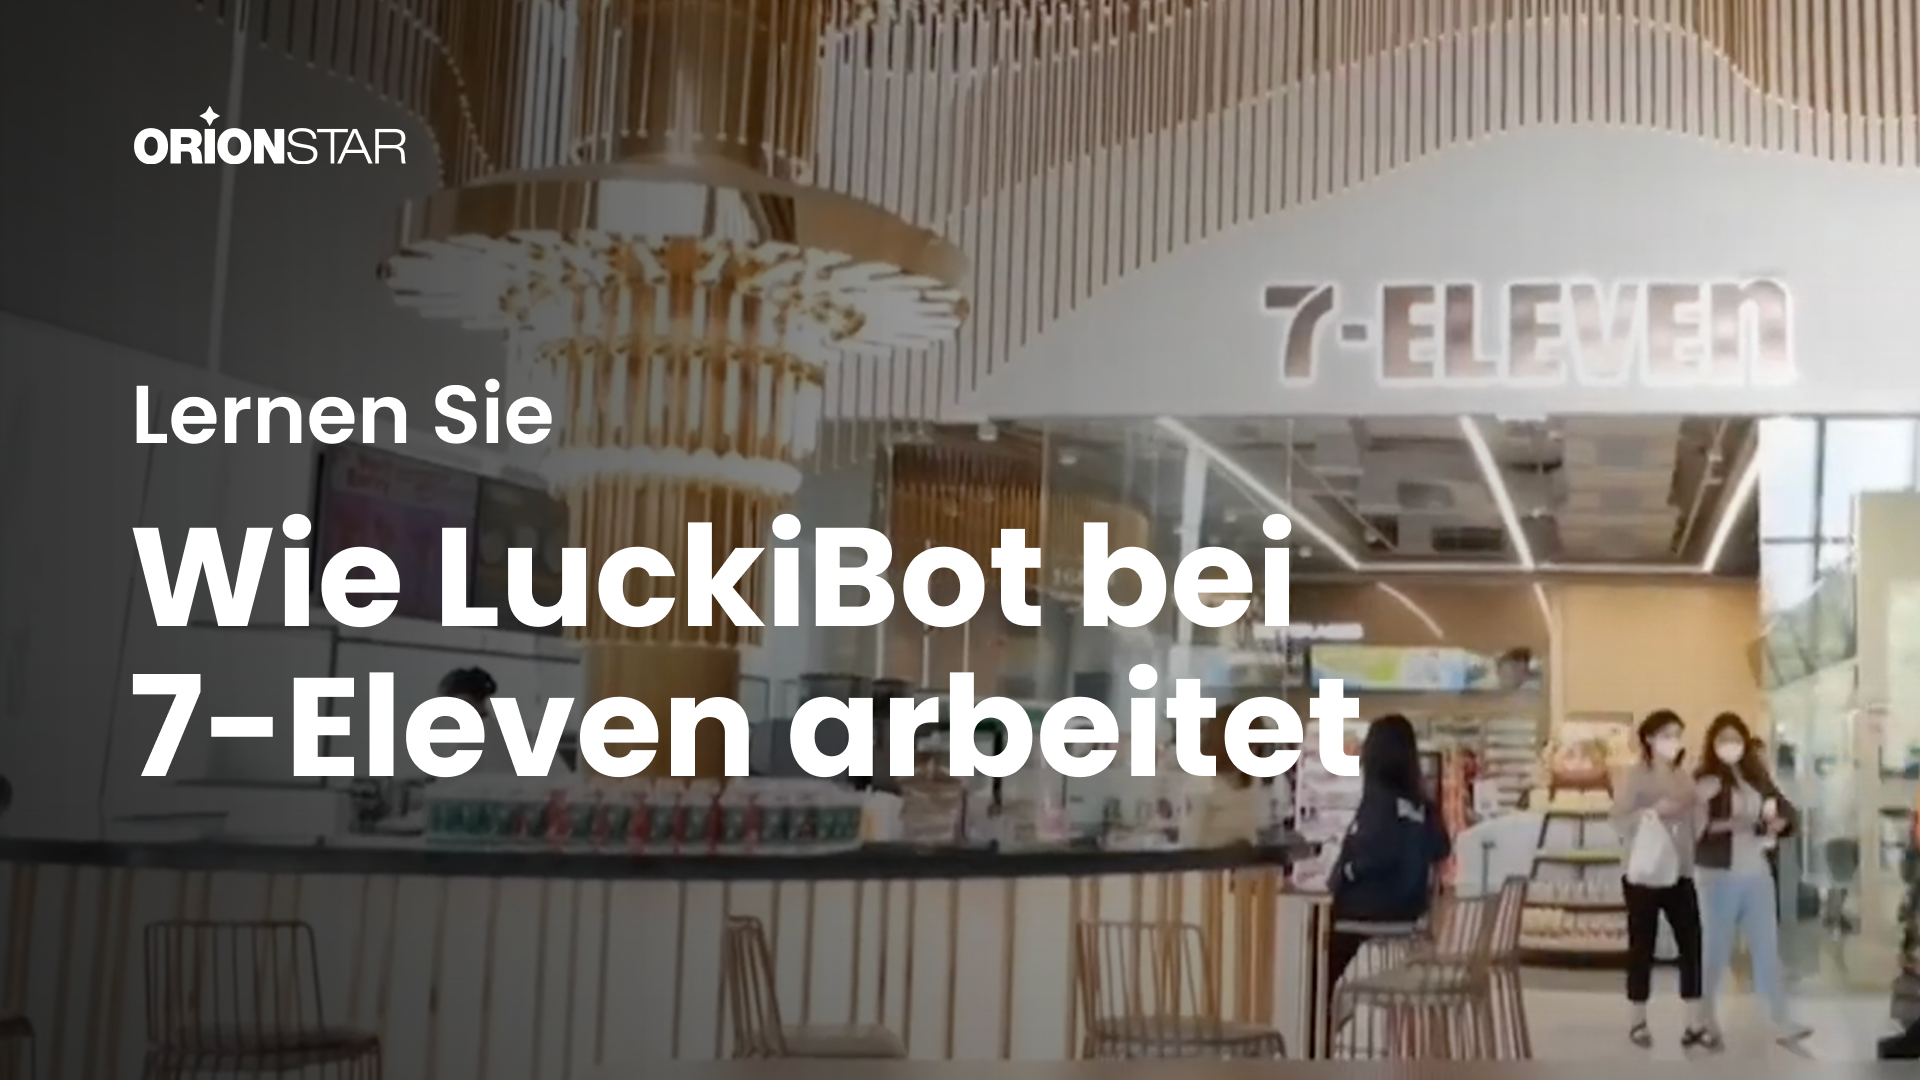 Möchten Sie wissen, wie LuckiBot bei 7-Eleven arbeitet?